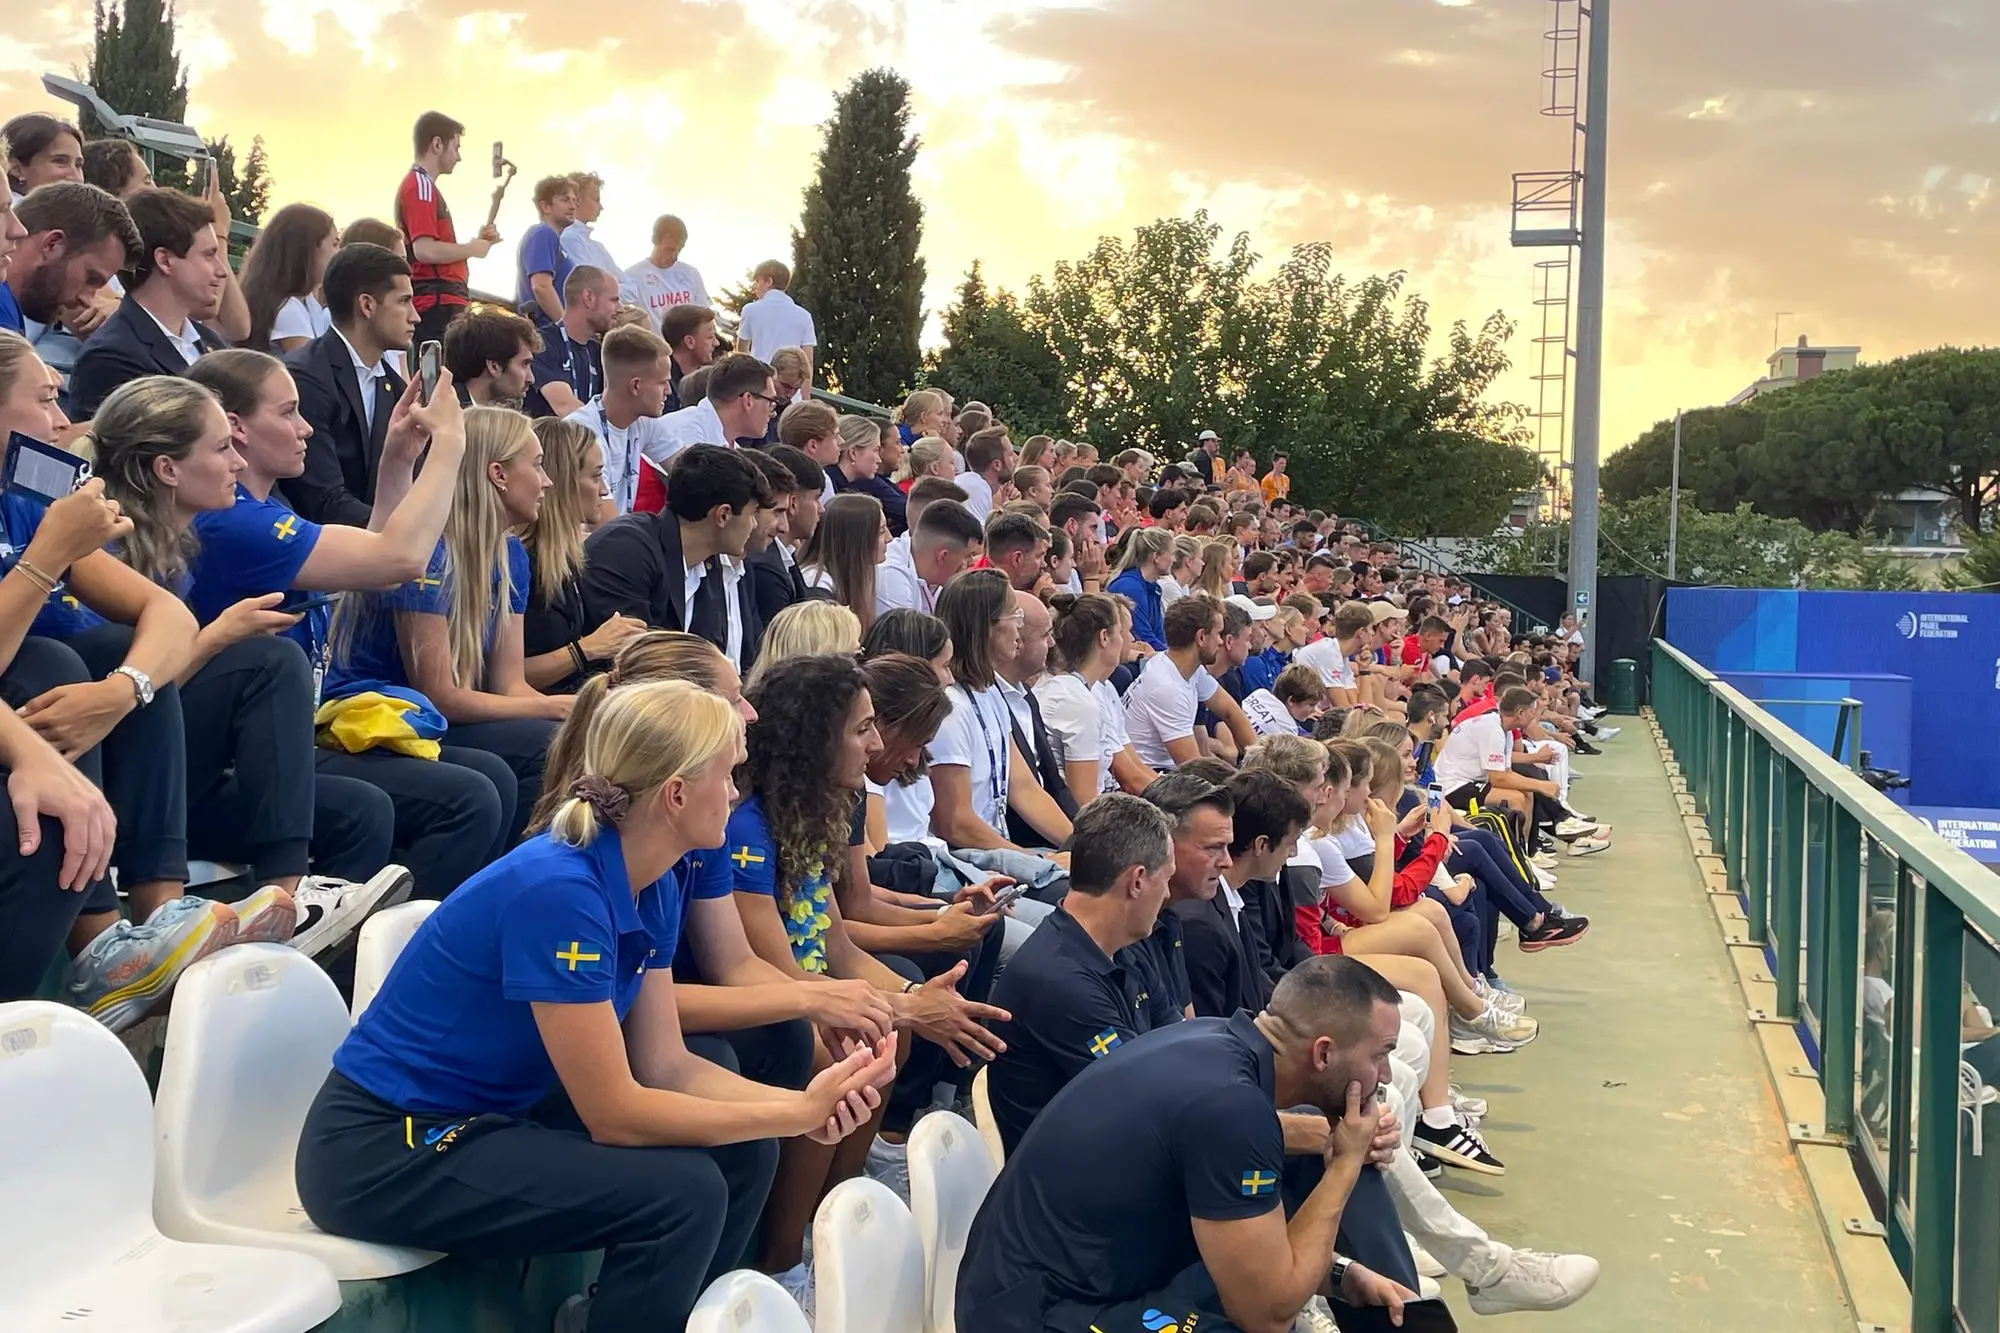 Le nazionali partecipanti agli Europei di padel nella cerimonia inaugurale al Tennis Club Cagliari (foto Spignesi)